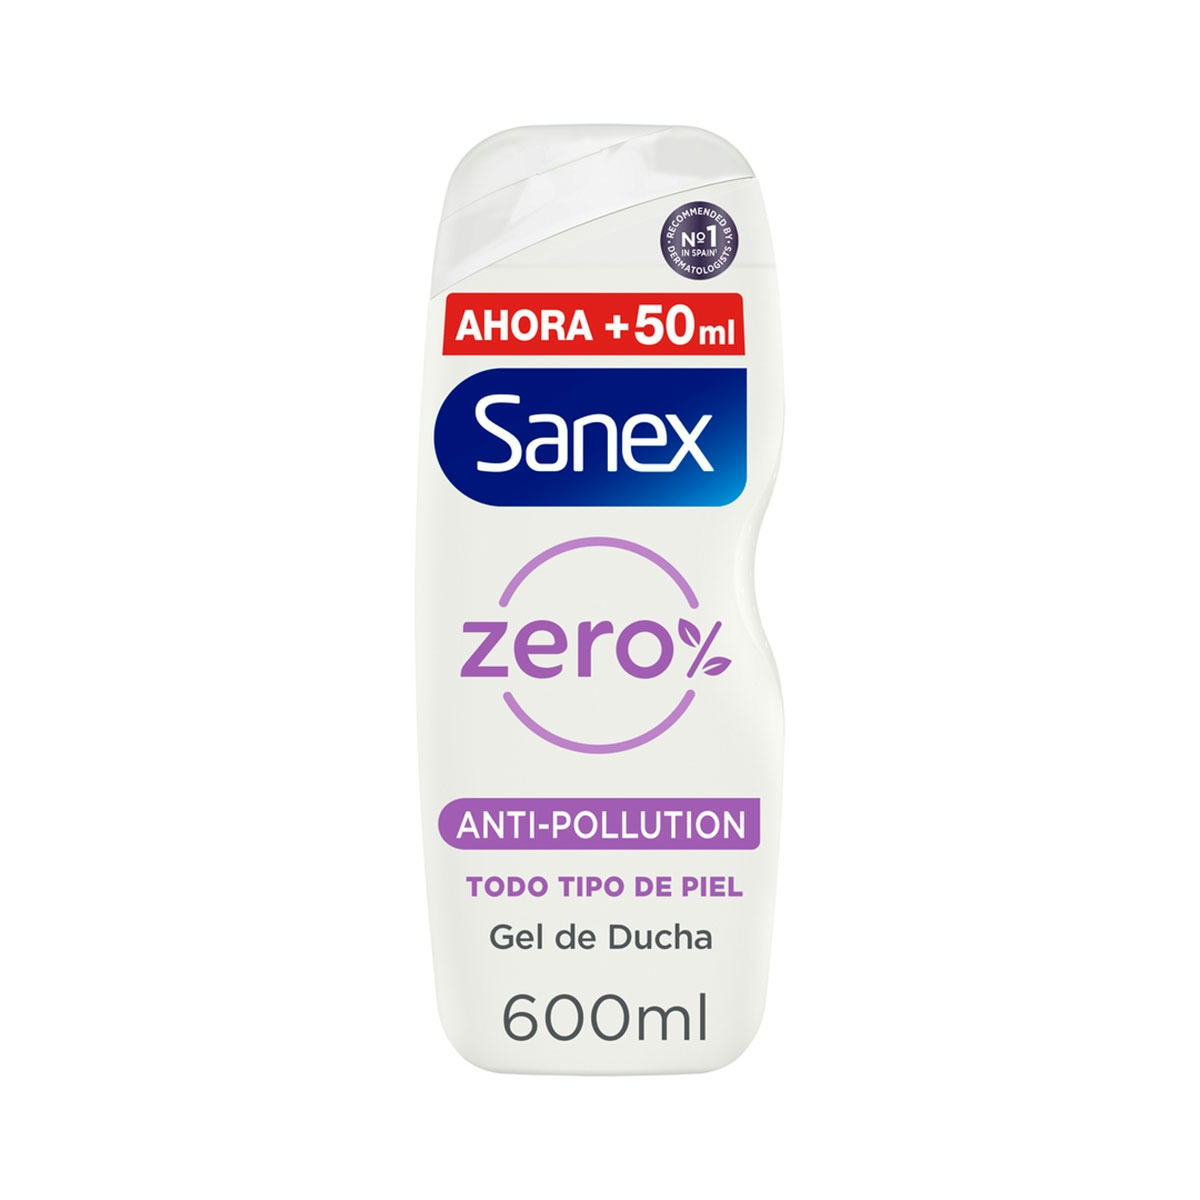 Gel de ducha o baño Sanex  Zero% Anti-Pollution con ingredientes esenciales 600ml